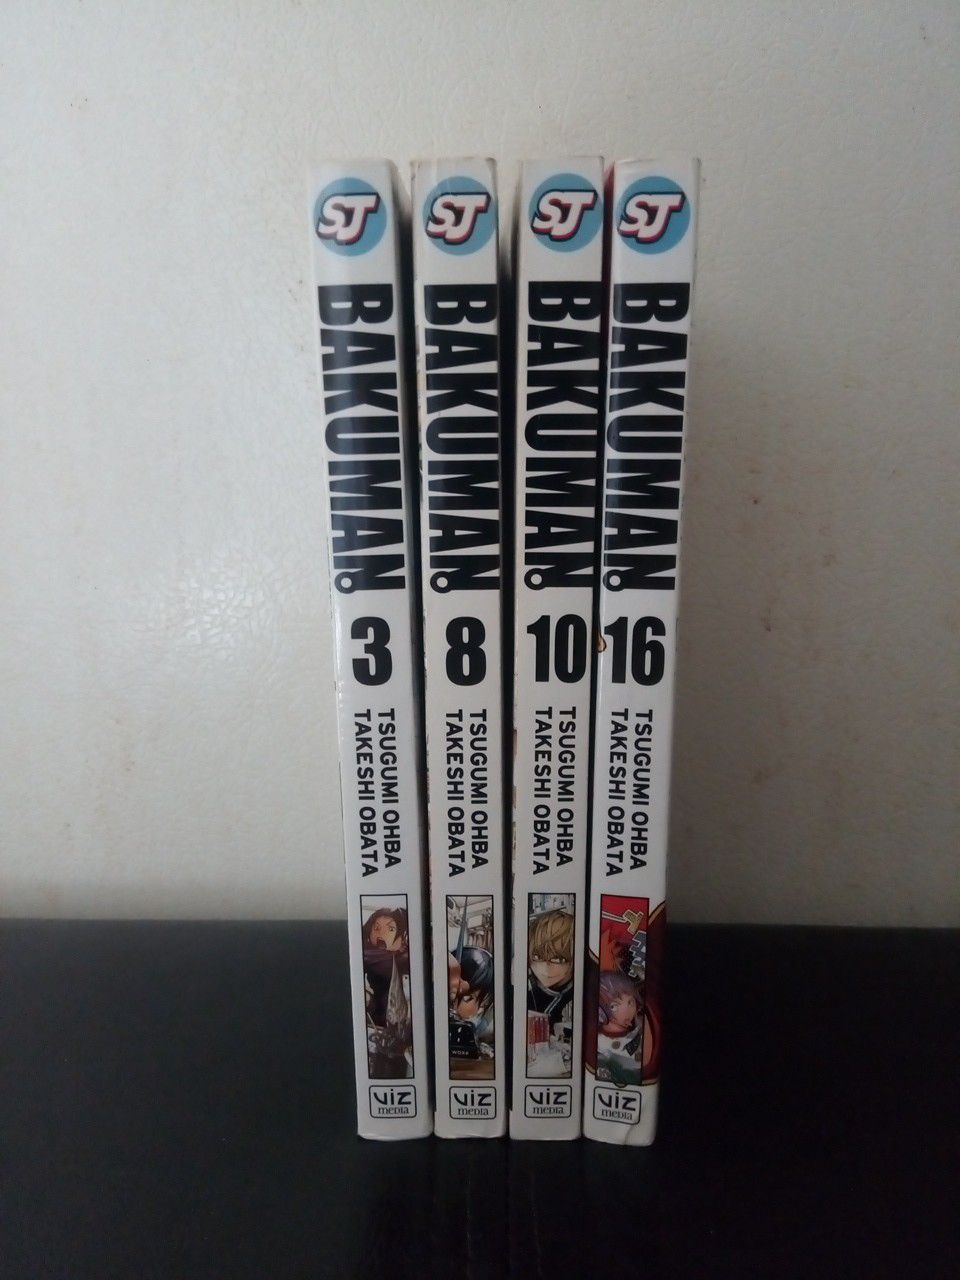 Bakuman vol.3,8,10,16 ShonenJump manga